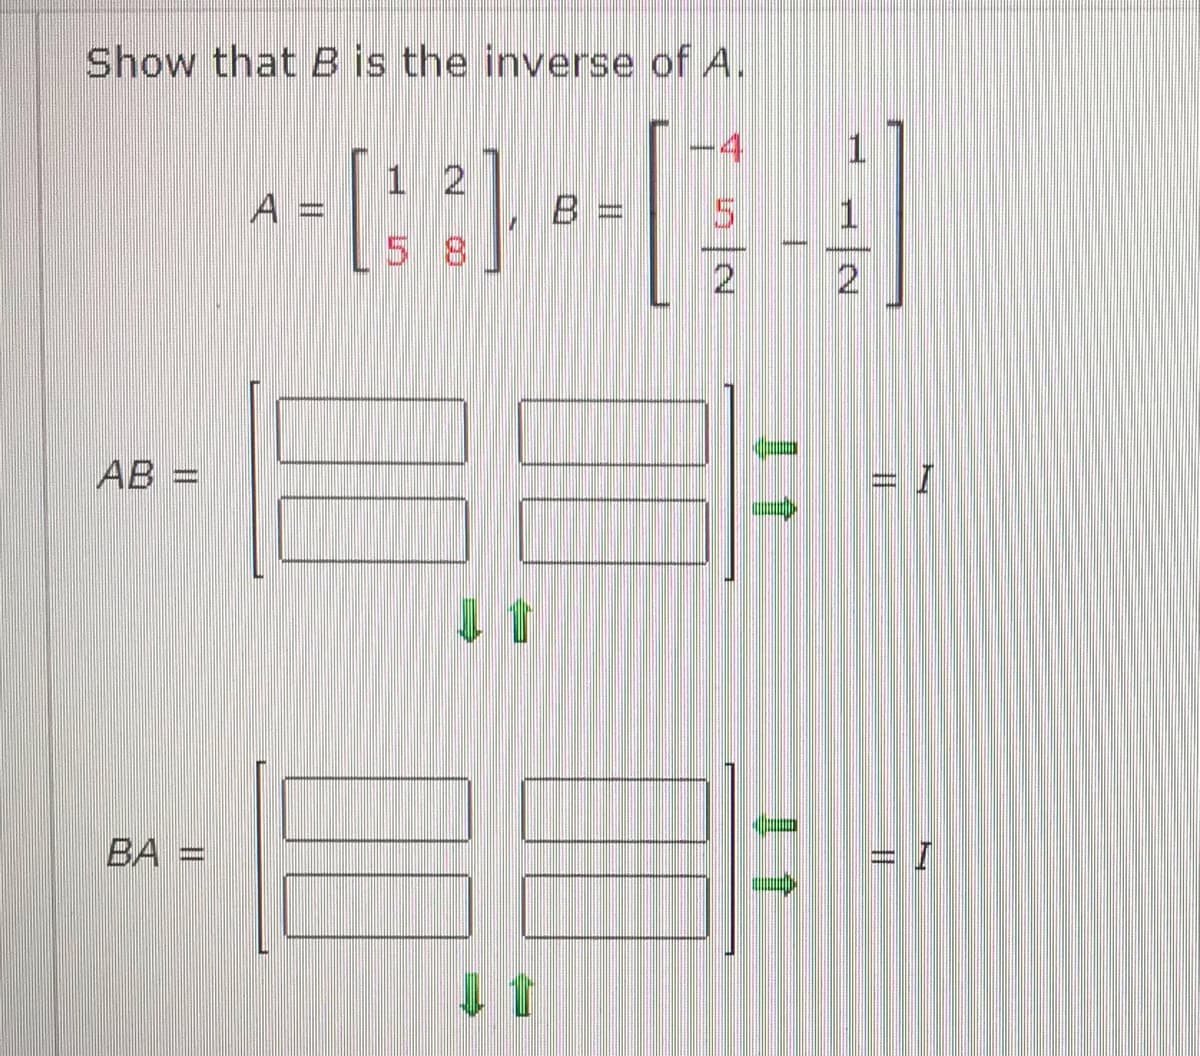 Show that B is the inverse of A.
4
1.
1 2
A =
B =
1
5 8
2
AB =
ВА
1會
